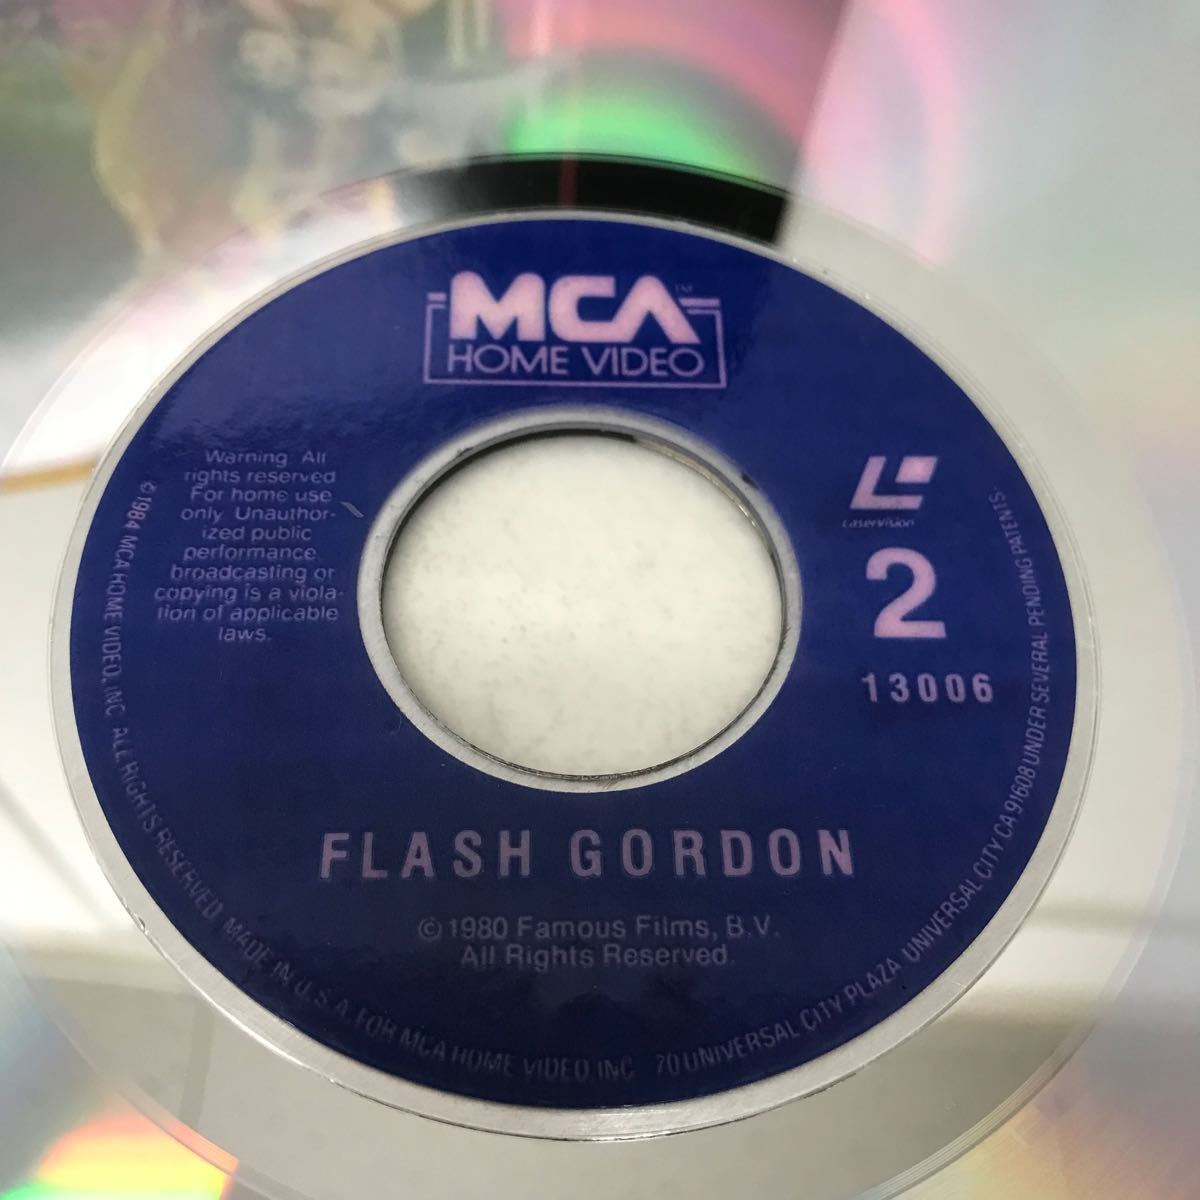 I1126B3 フラッシュ・ゴードン FLASH GORDON LD レーザーディスク 2巻セット / フェリーニを連れた王女 / Music by QUEEN 映画_画像9